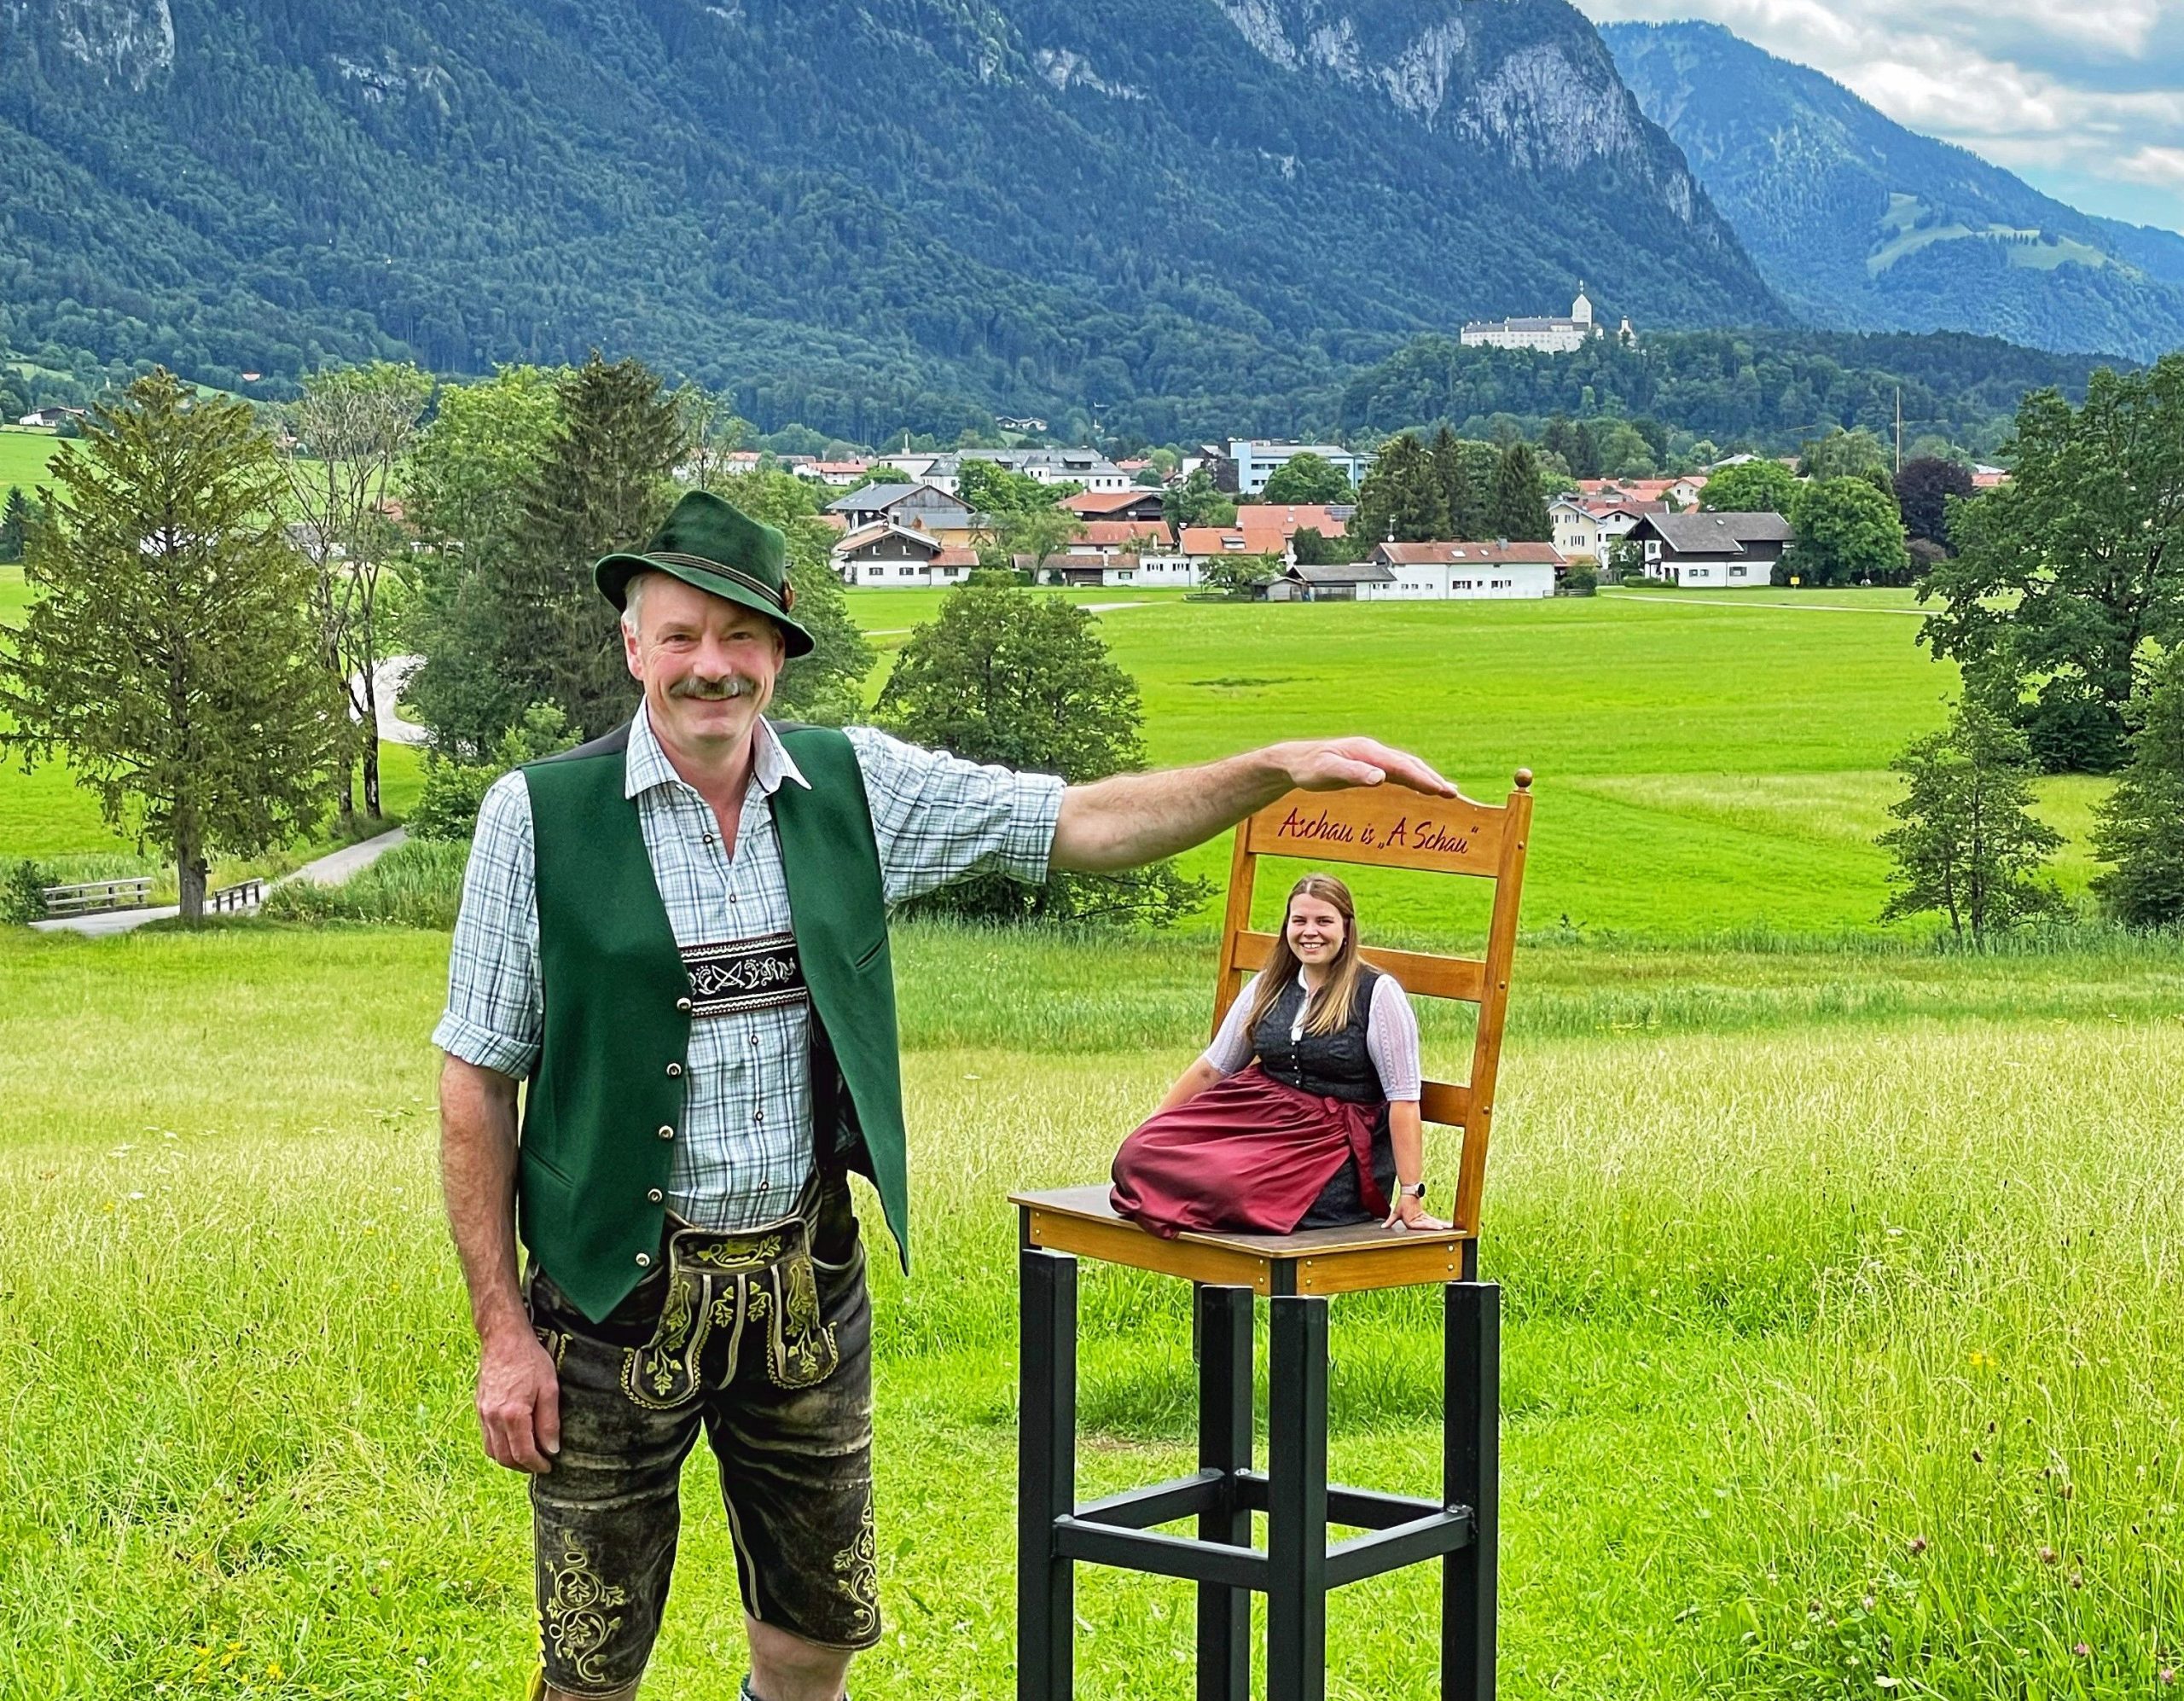 Beulet Stuhl in Aschau im Chiemgau. Optische Taeuschung laesst Mann neben Stuhl wie einen Riesen wirken und Frau auf Stuhl wie einen Zwerg